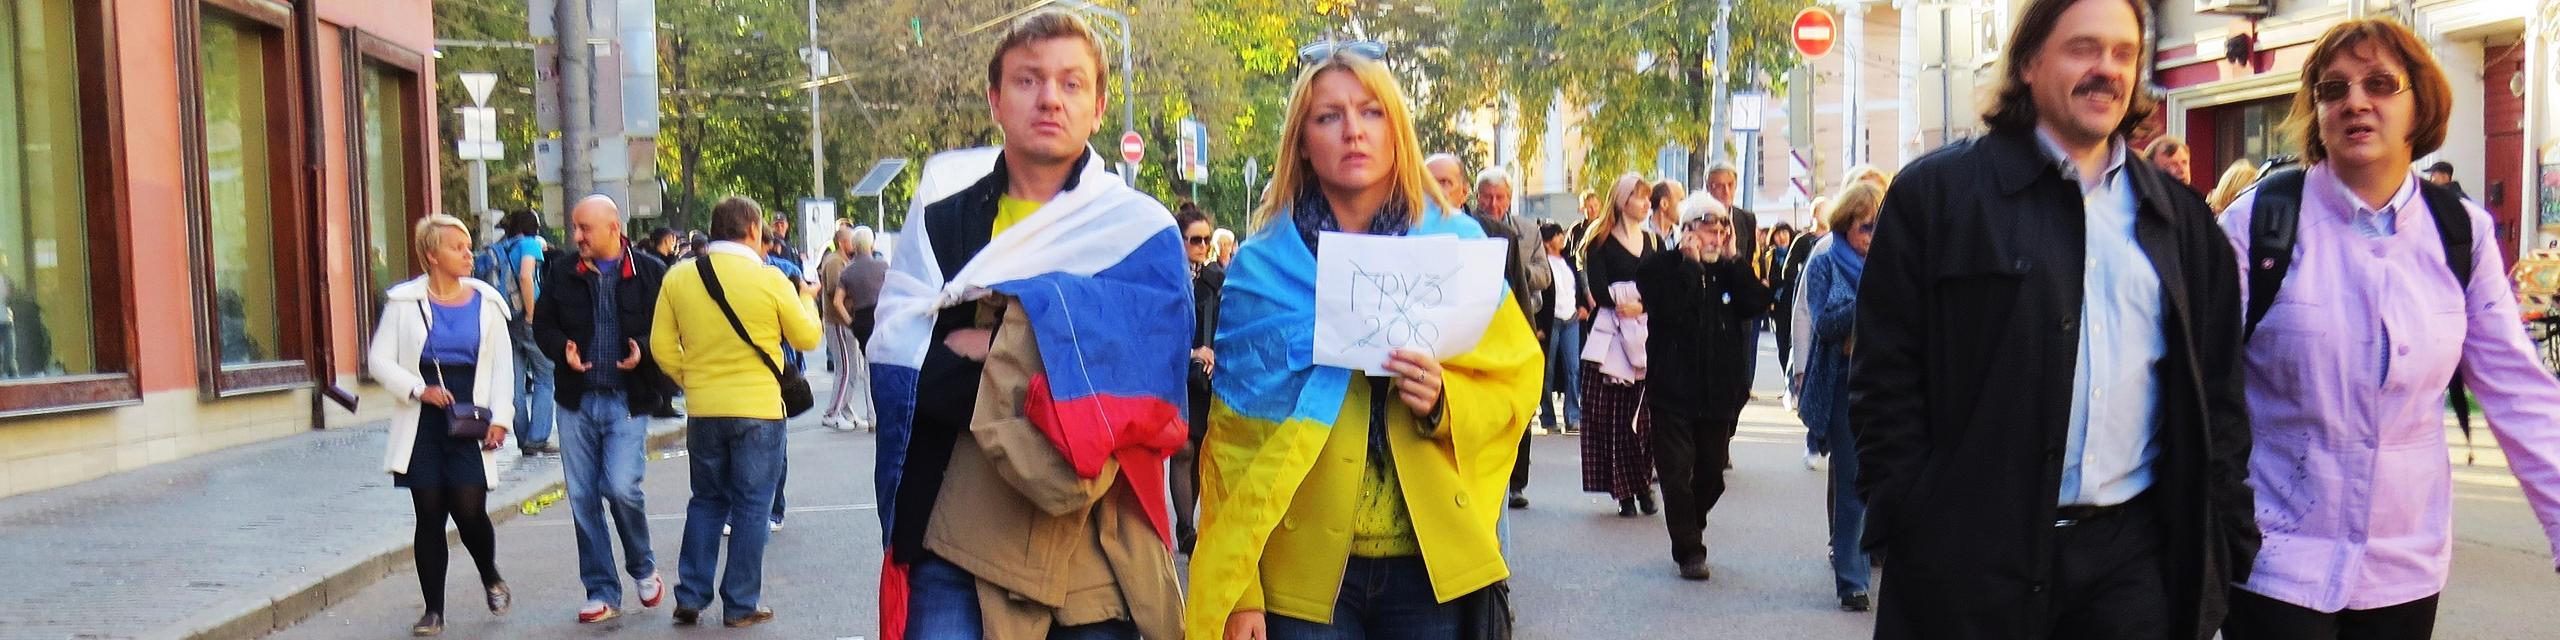 twee mensen op een vredesbetoging in Moskou. De ene is gedrapeerd in de Russische vlag, de andere in de Oekraiense.